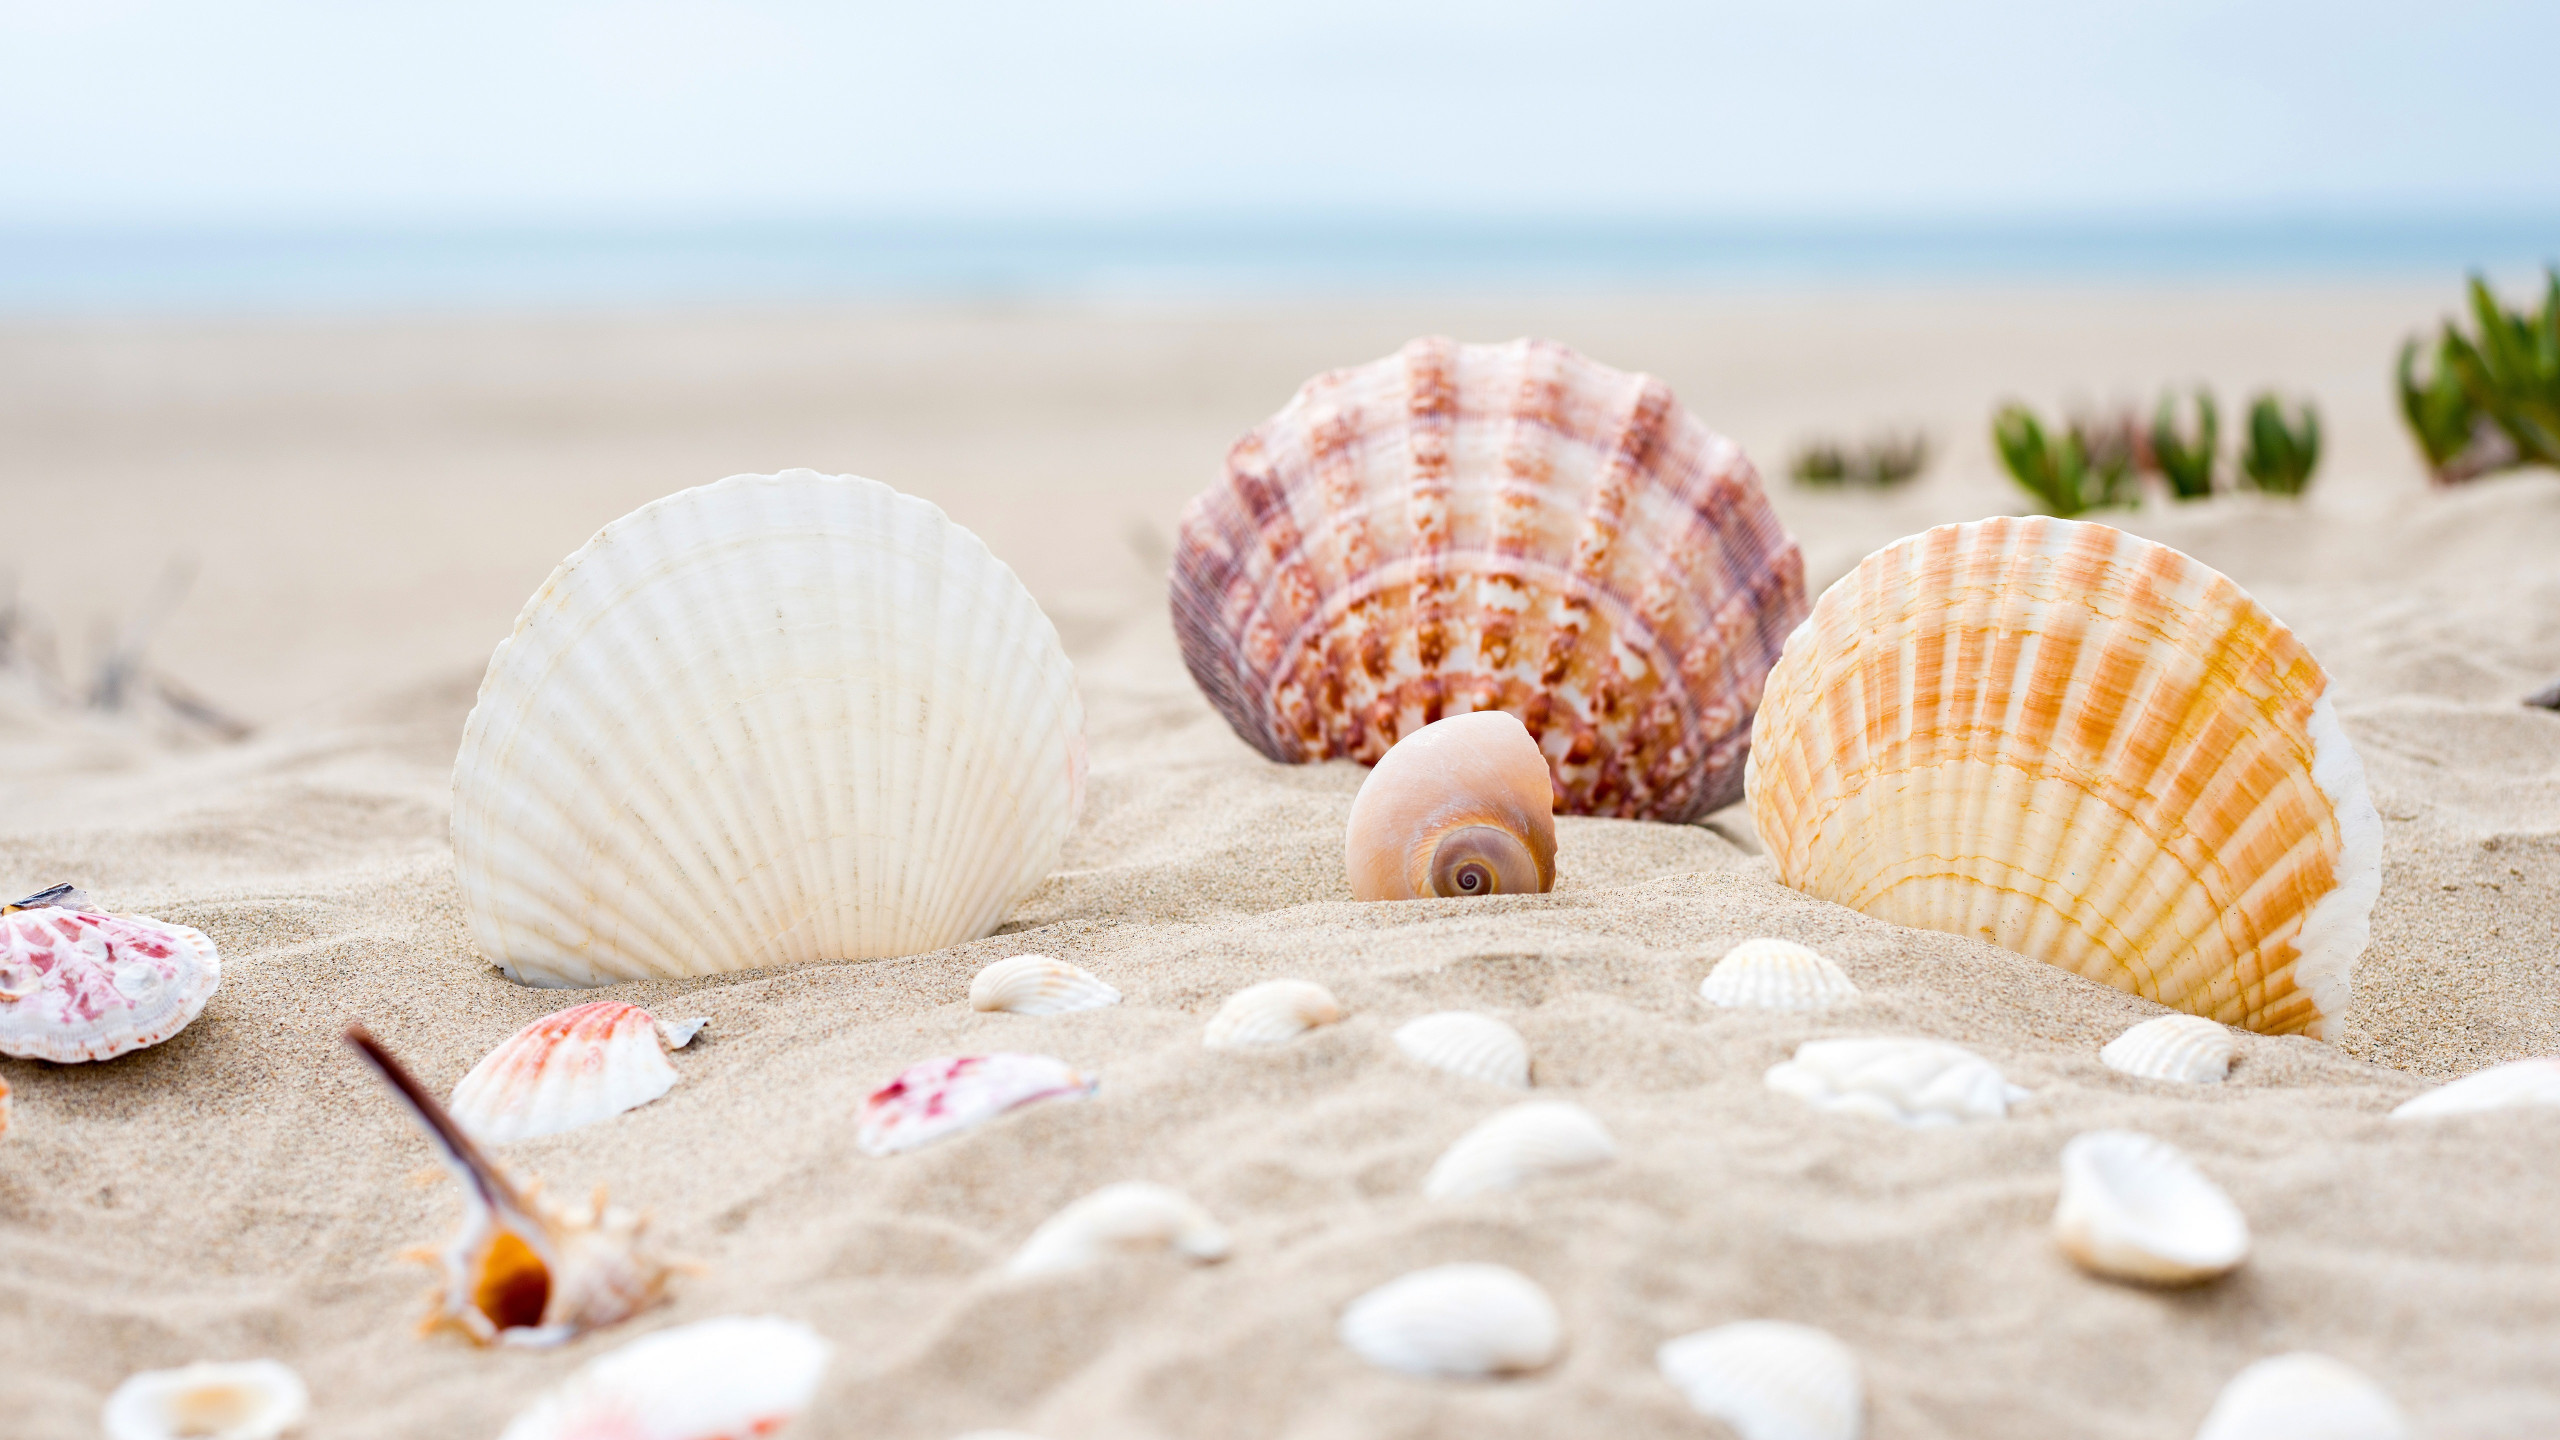 Shells on the ocean beach wallpaper 2560x1440